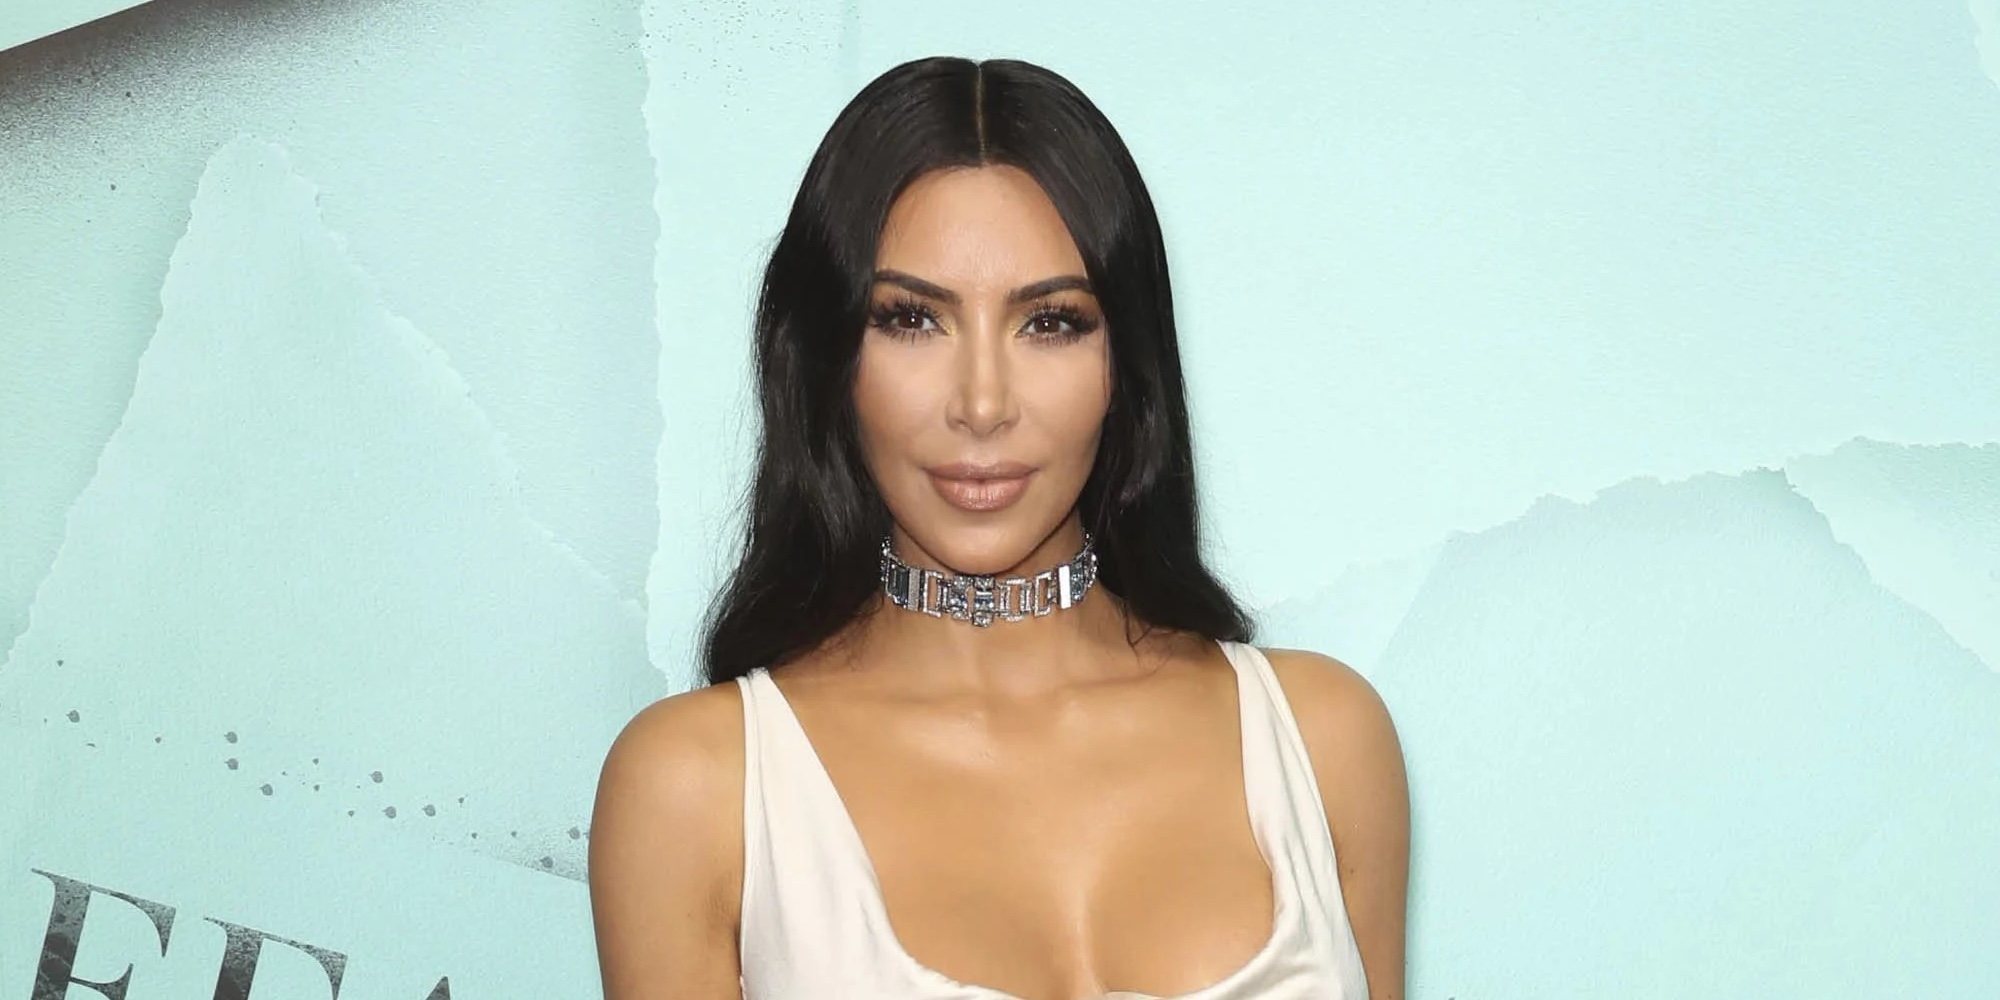 La mayor preocupación de Kim Kardashian y la razón por lo que mantiene una relación cordial con Kanye West